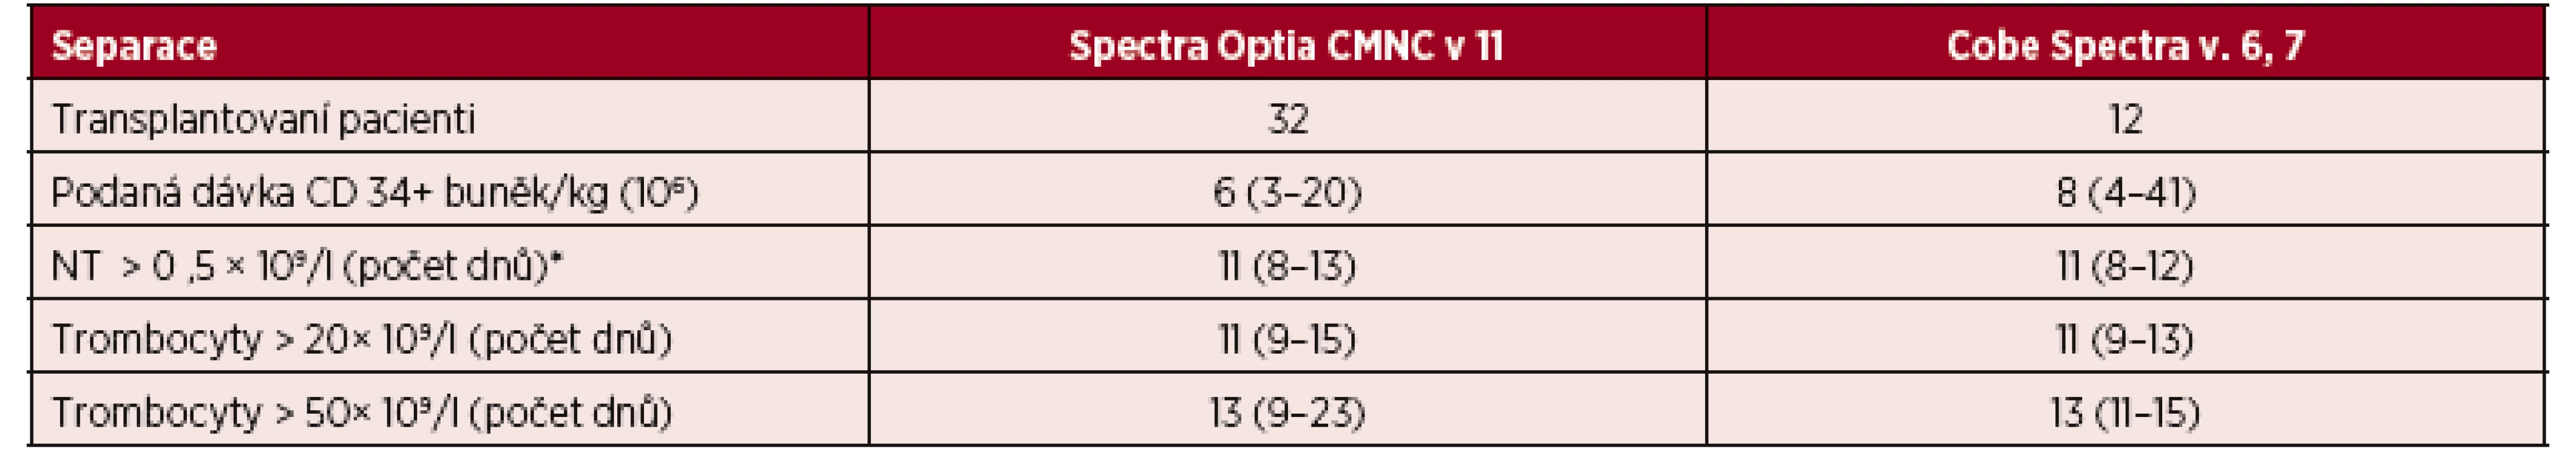 Velkoobjemové separace PBPC autologní – CMNC Spectra Optia a Cobe Spectra, doba přihojení štěpů v počtu neutrofilních leukocytů a trombocytů